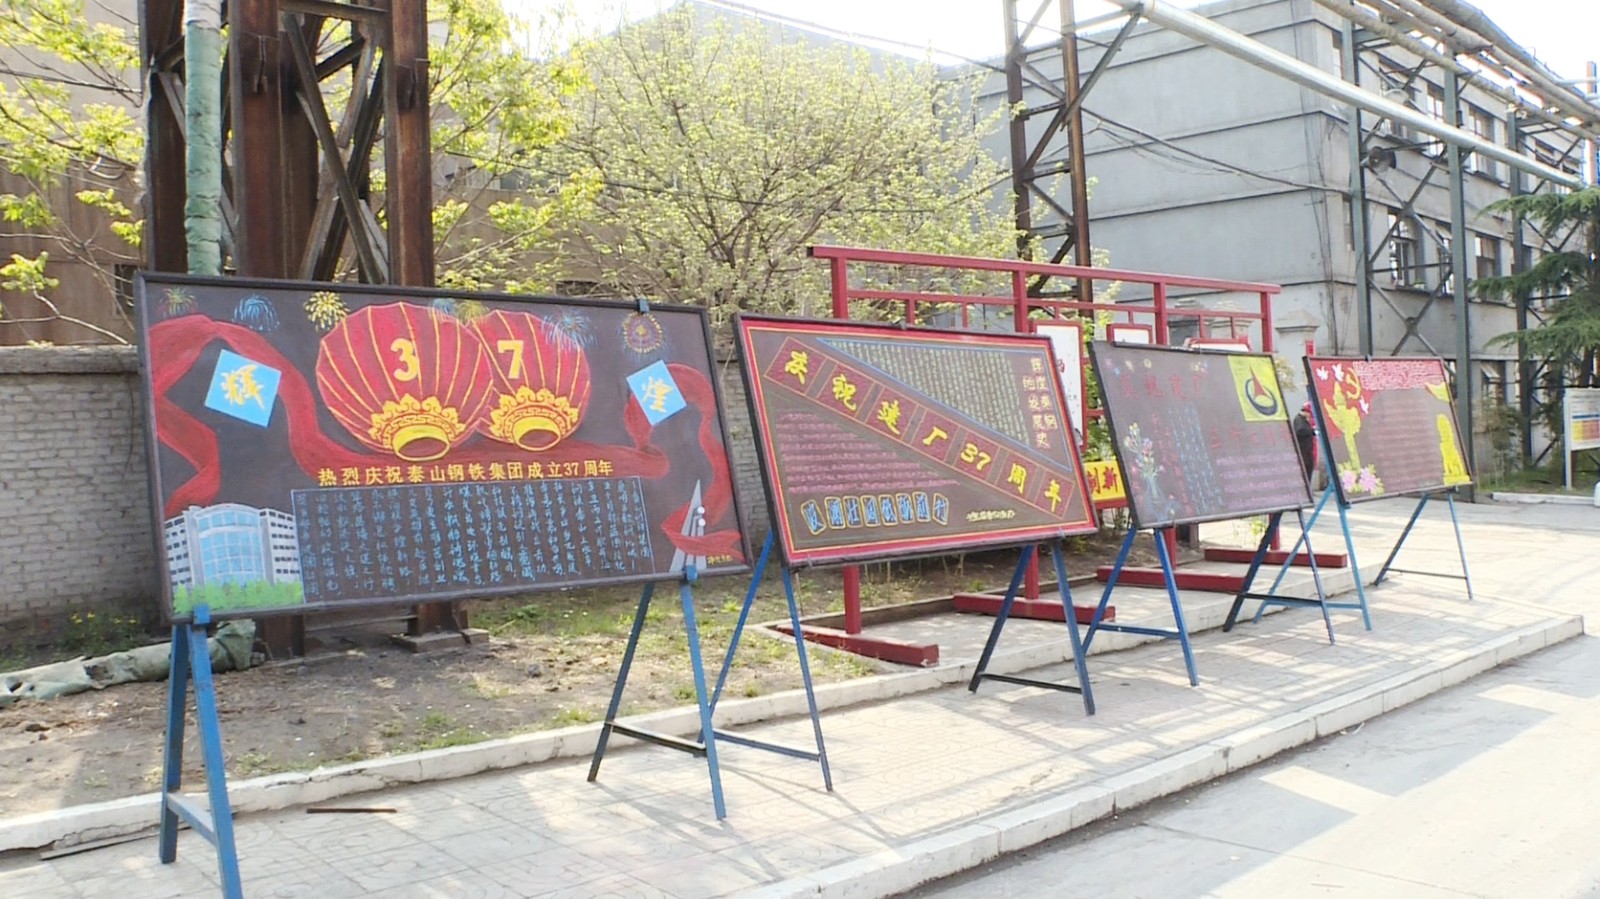 泰山钢铁集团组织迎厂庆黑板报展评活动